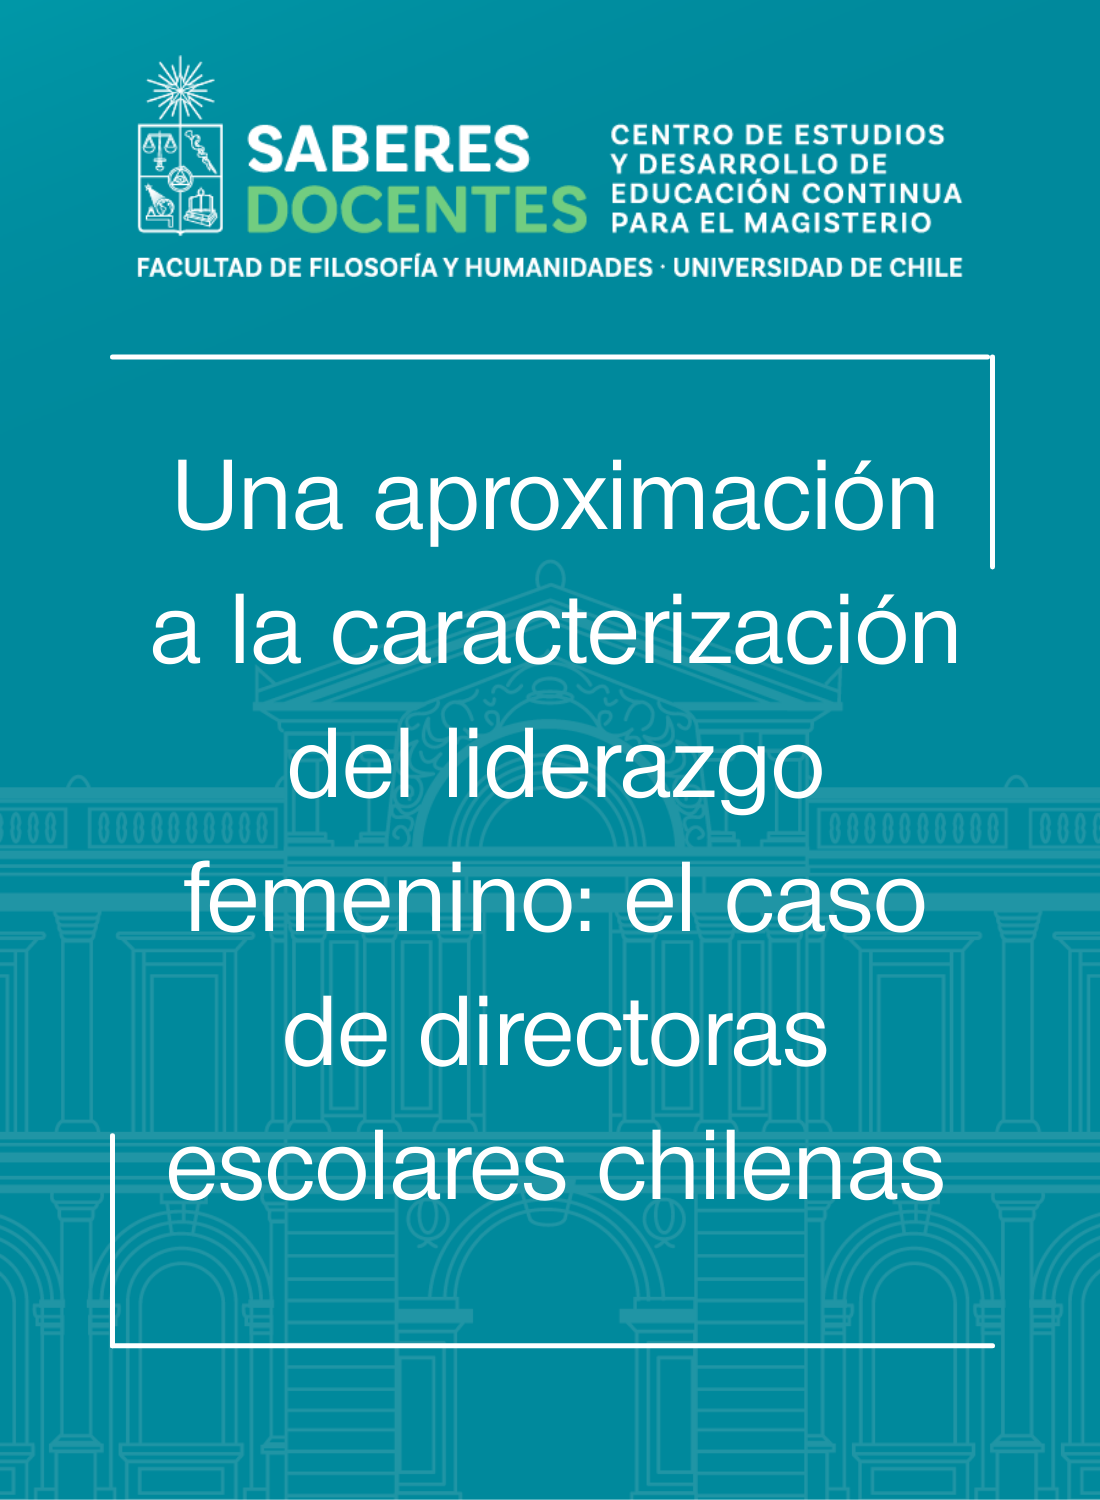 Una aproximación a la caracterización del liderazgo femenino: el caso de directoras escolares chilenas